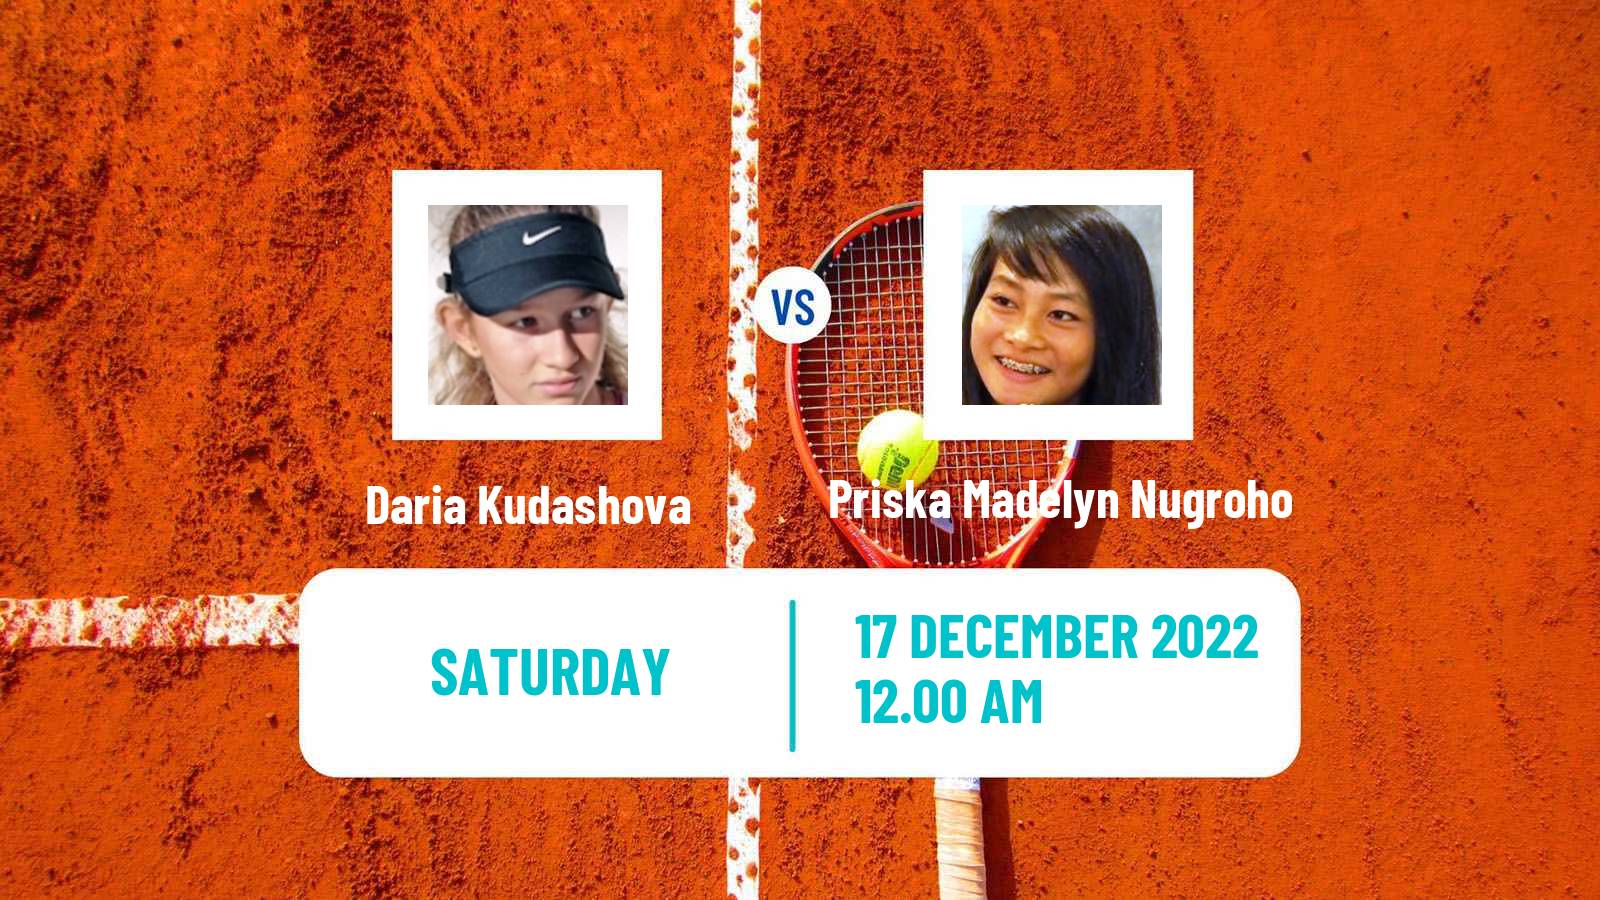 Tennis ITF Tournaments Daria Kudashova - Priska Madelyn Nugroho